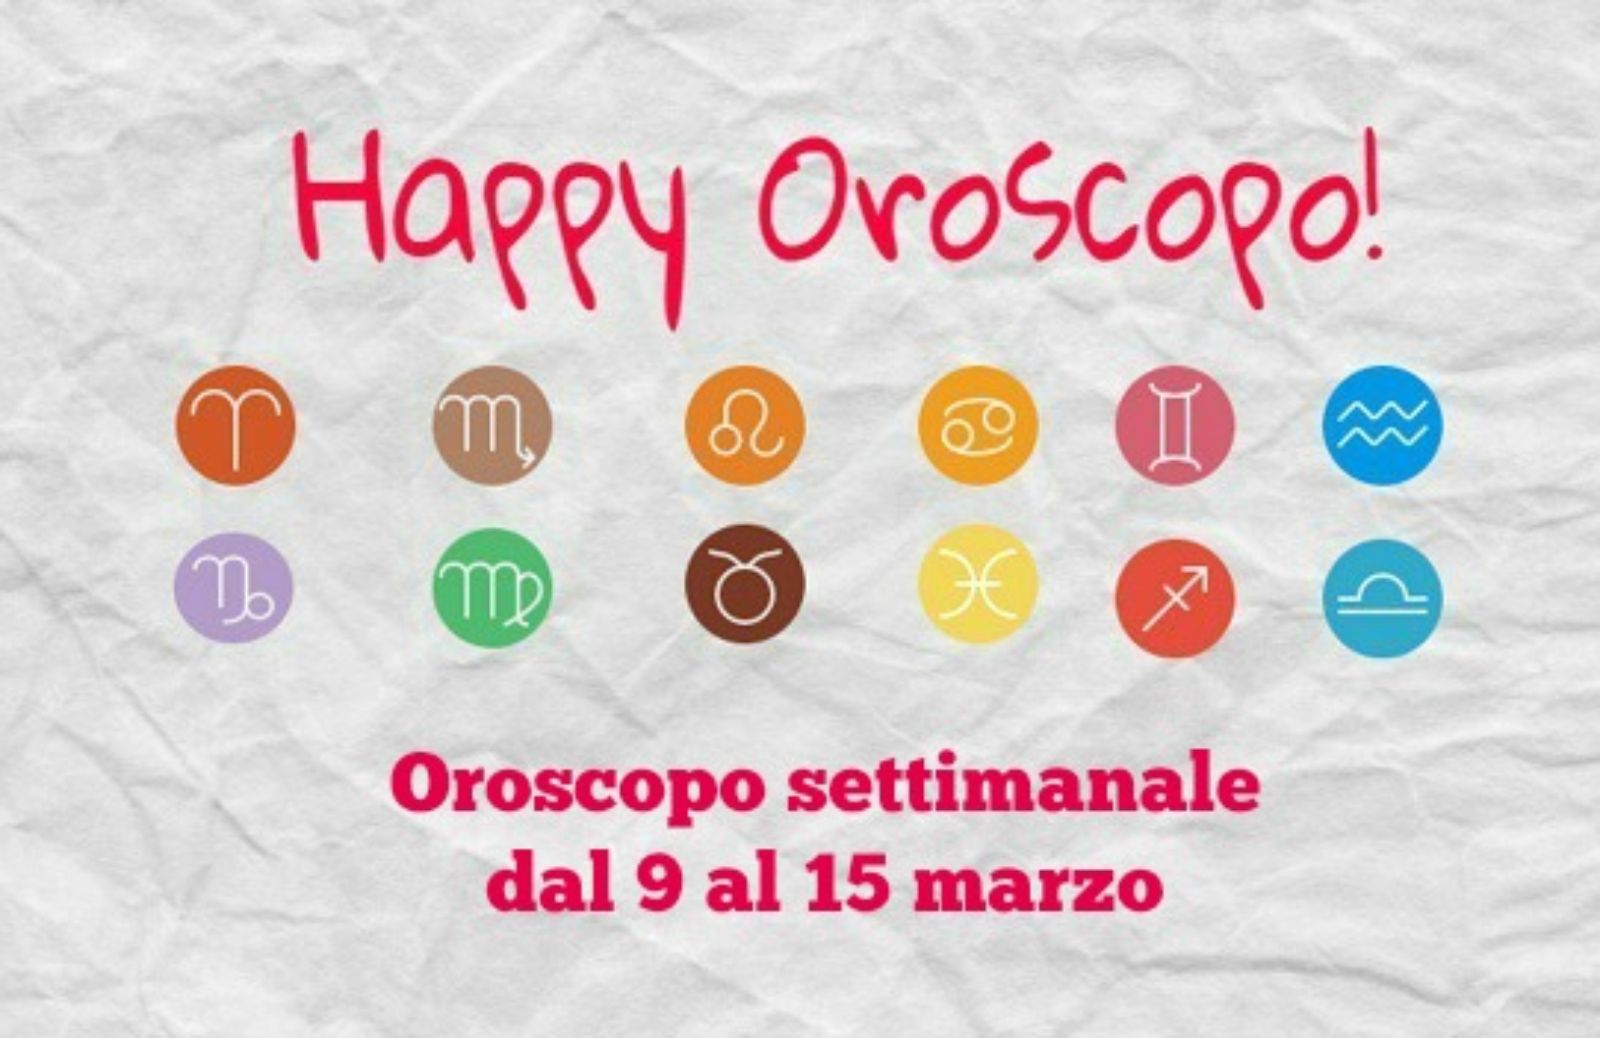 Happy Oroscopo della settimana: cosa dicono le stelle dal 9 al 15 marzo segno per segno